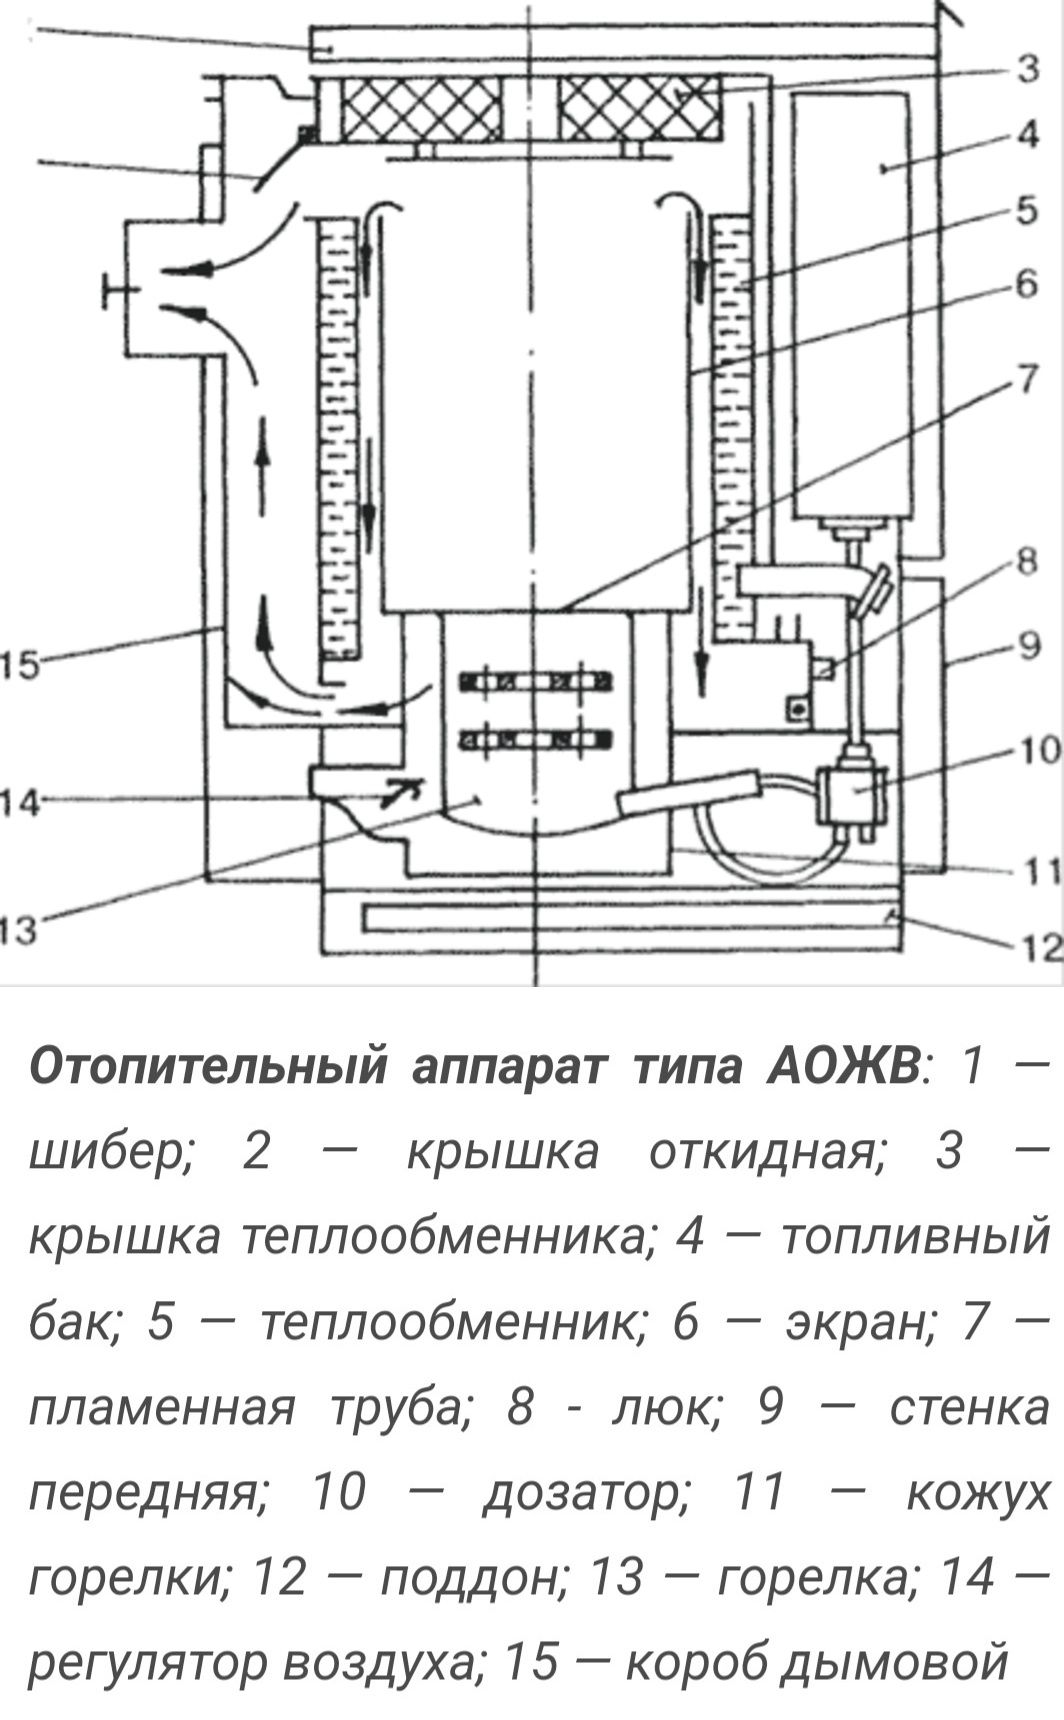 Отопительный котел на жидком топливе АОЖВ-11,6